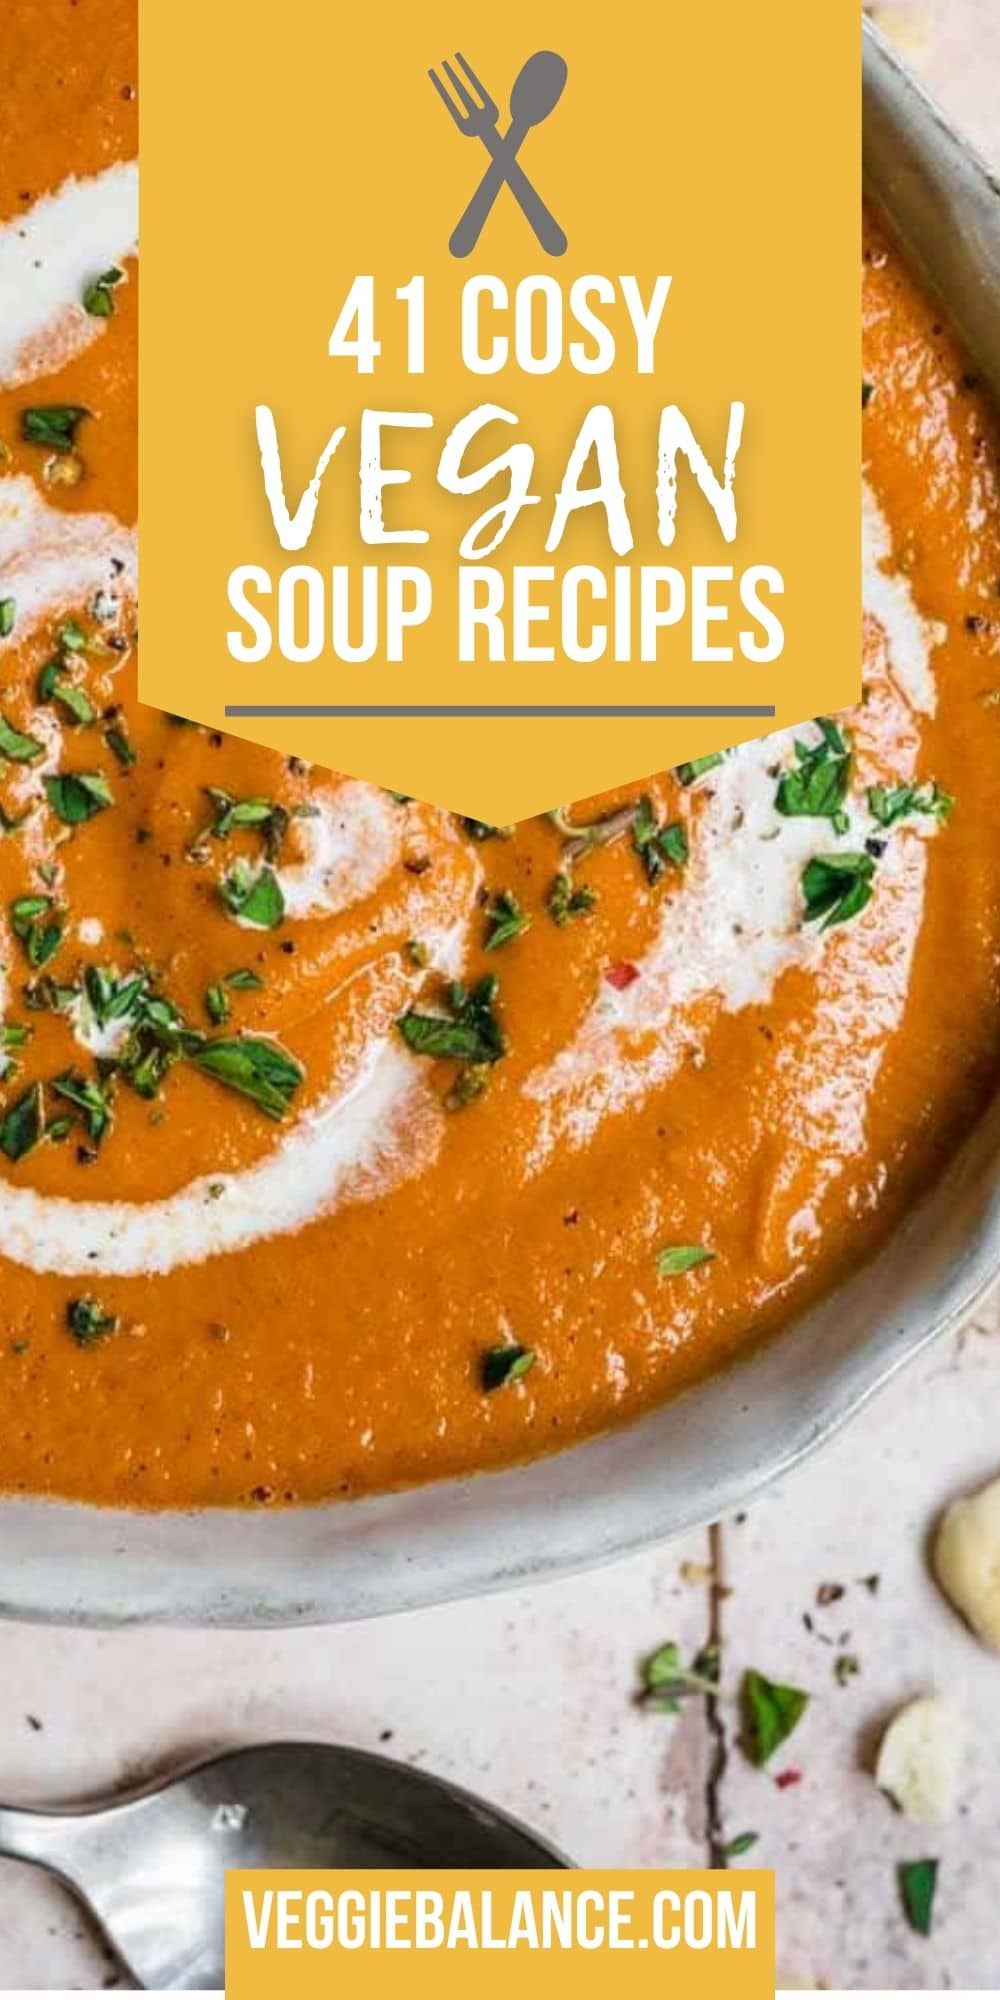 Vegan Soup Recipes Pin 1 